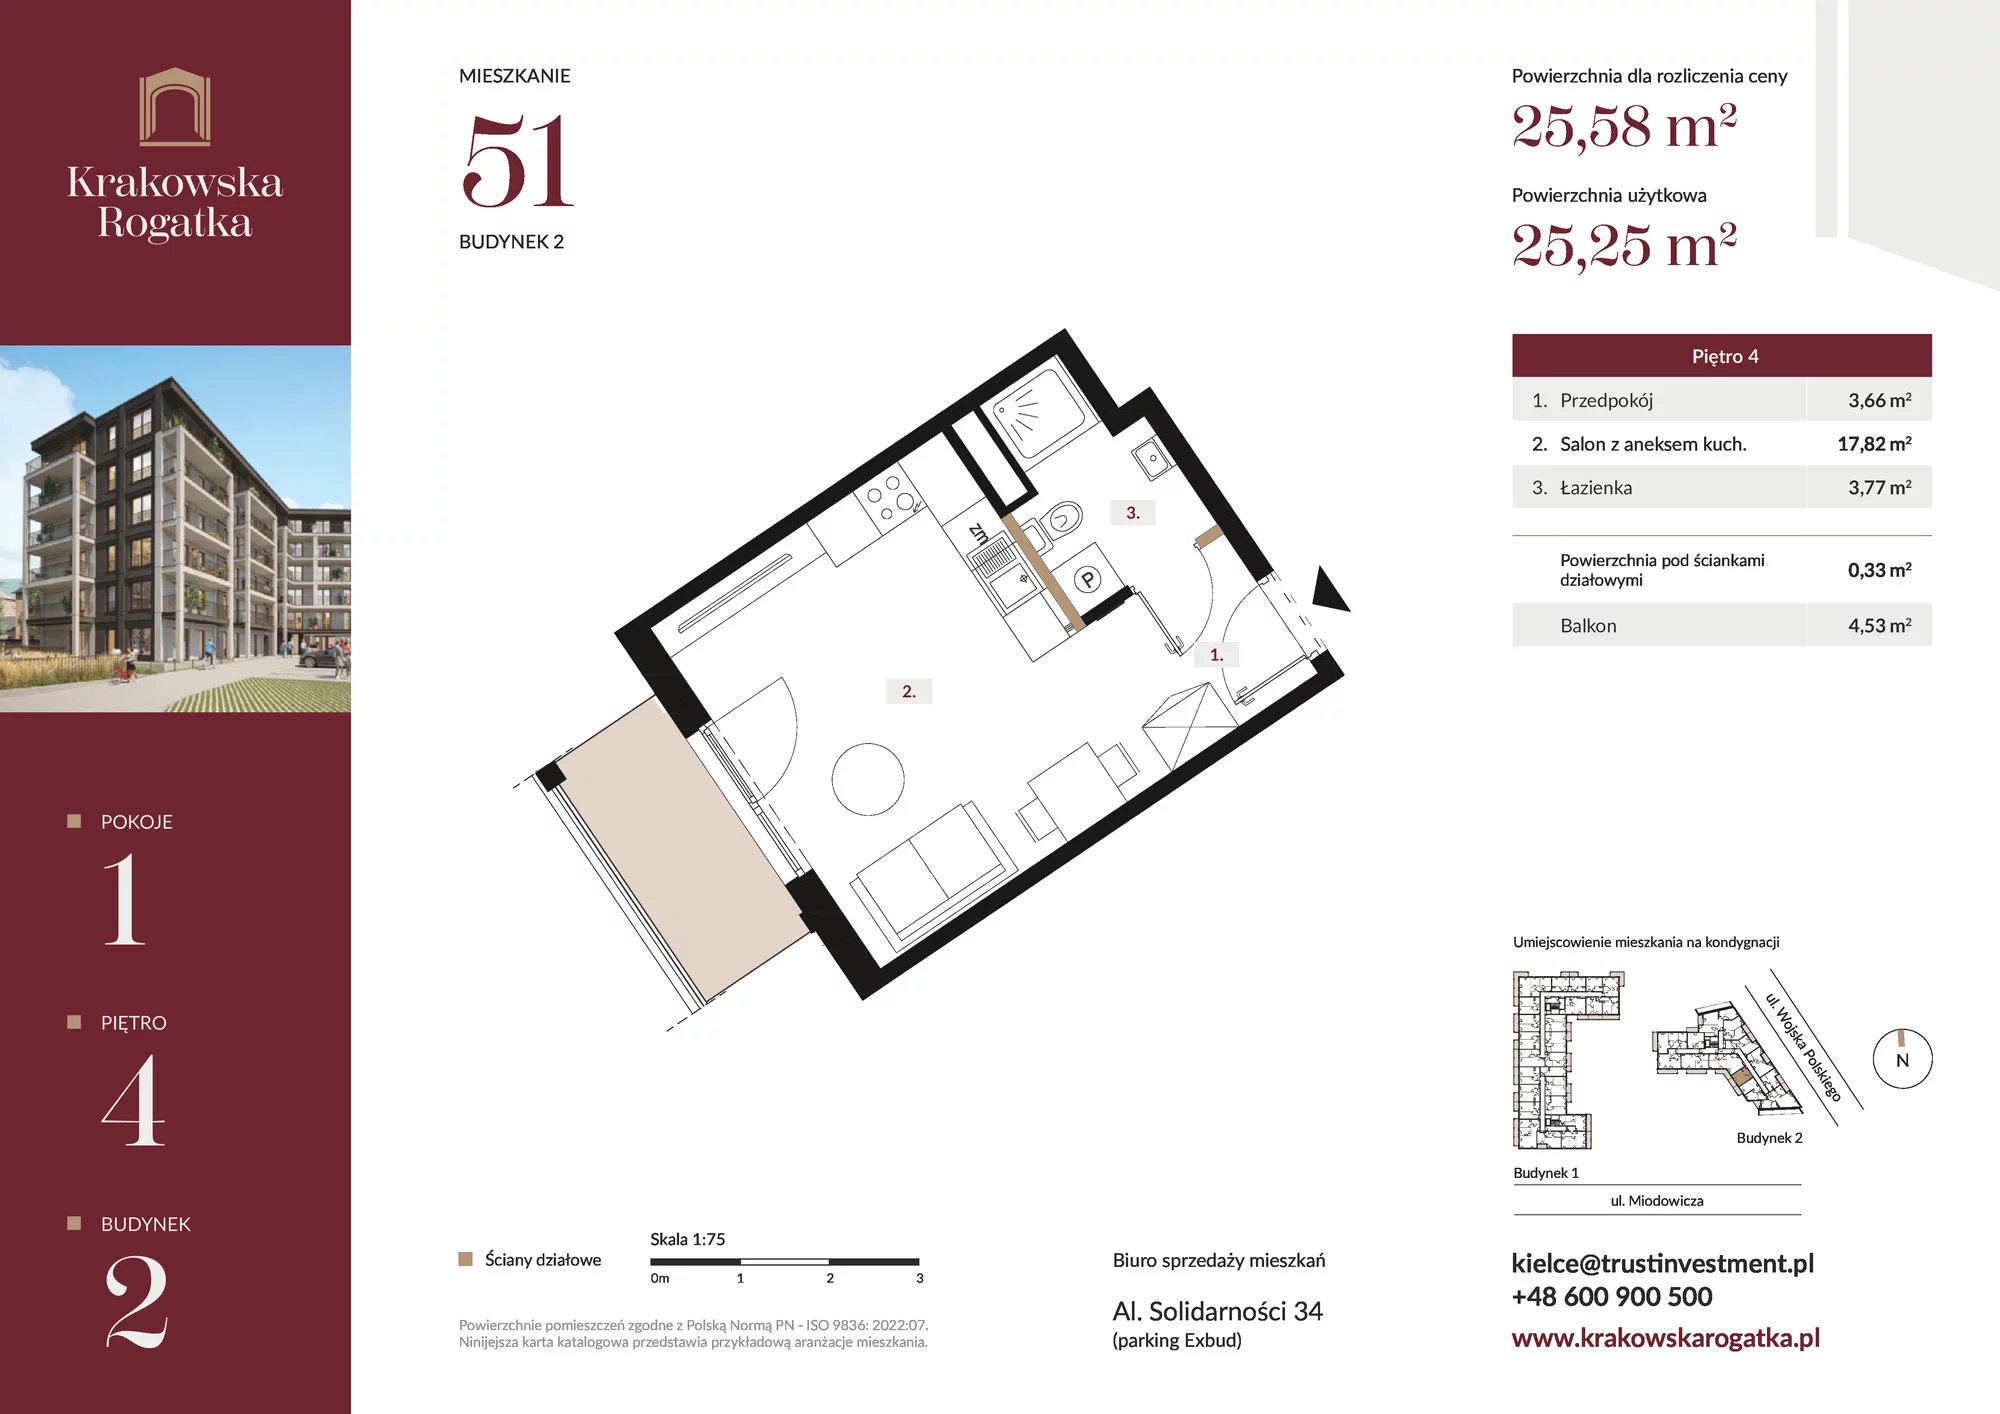 Mieszkanie 25,58 m², piętro 4, oferta nr Budynek 2 Mieszkanie 51, Krakowska Rogatka, Kielce, ul. Miodowicza 1